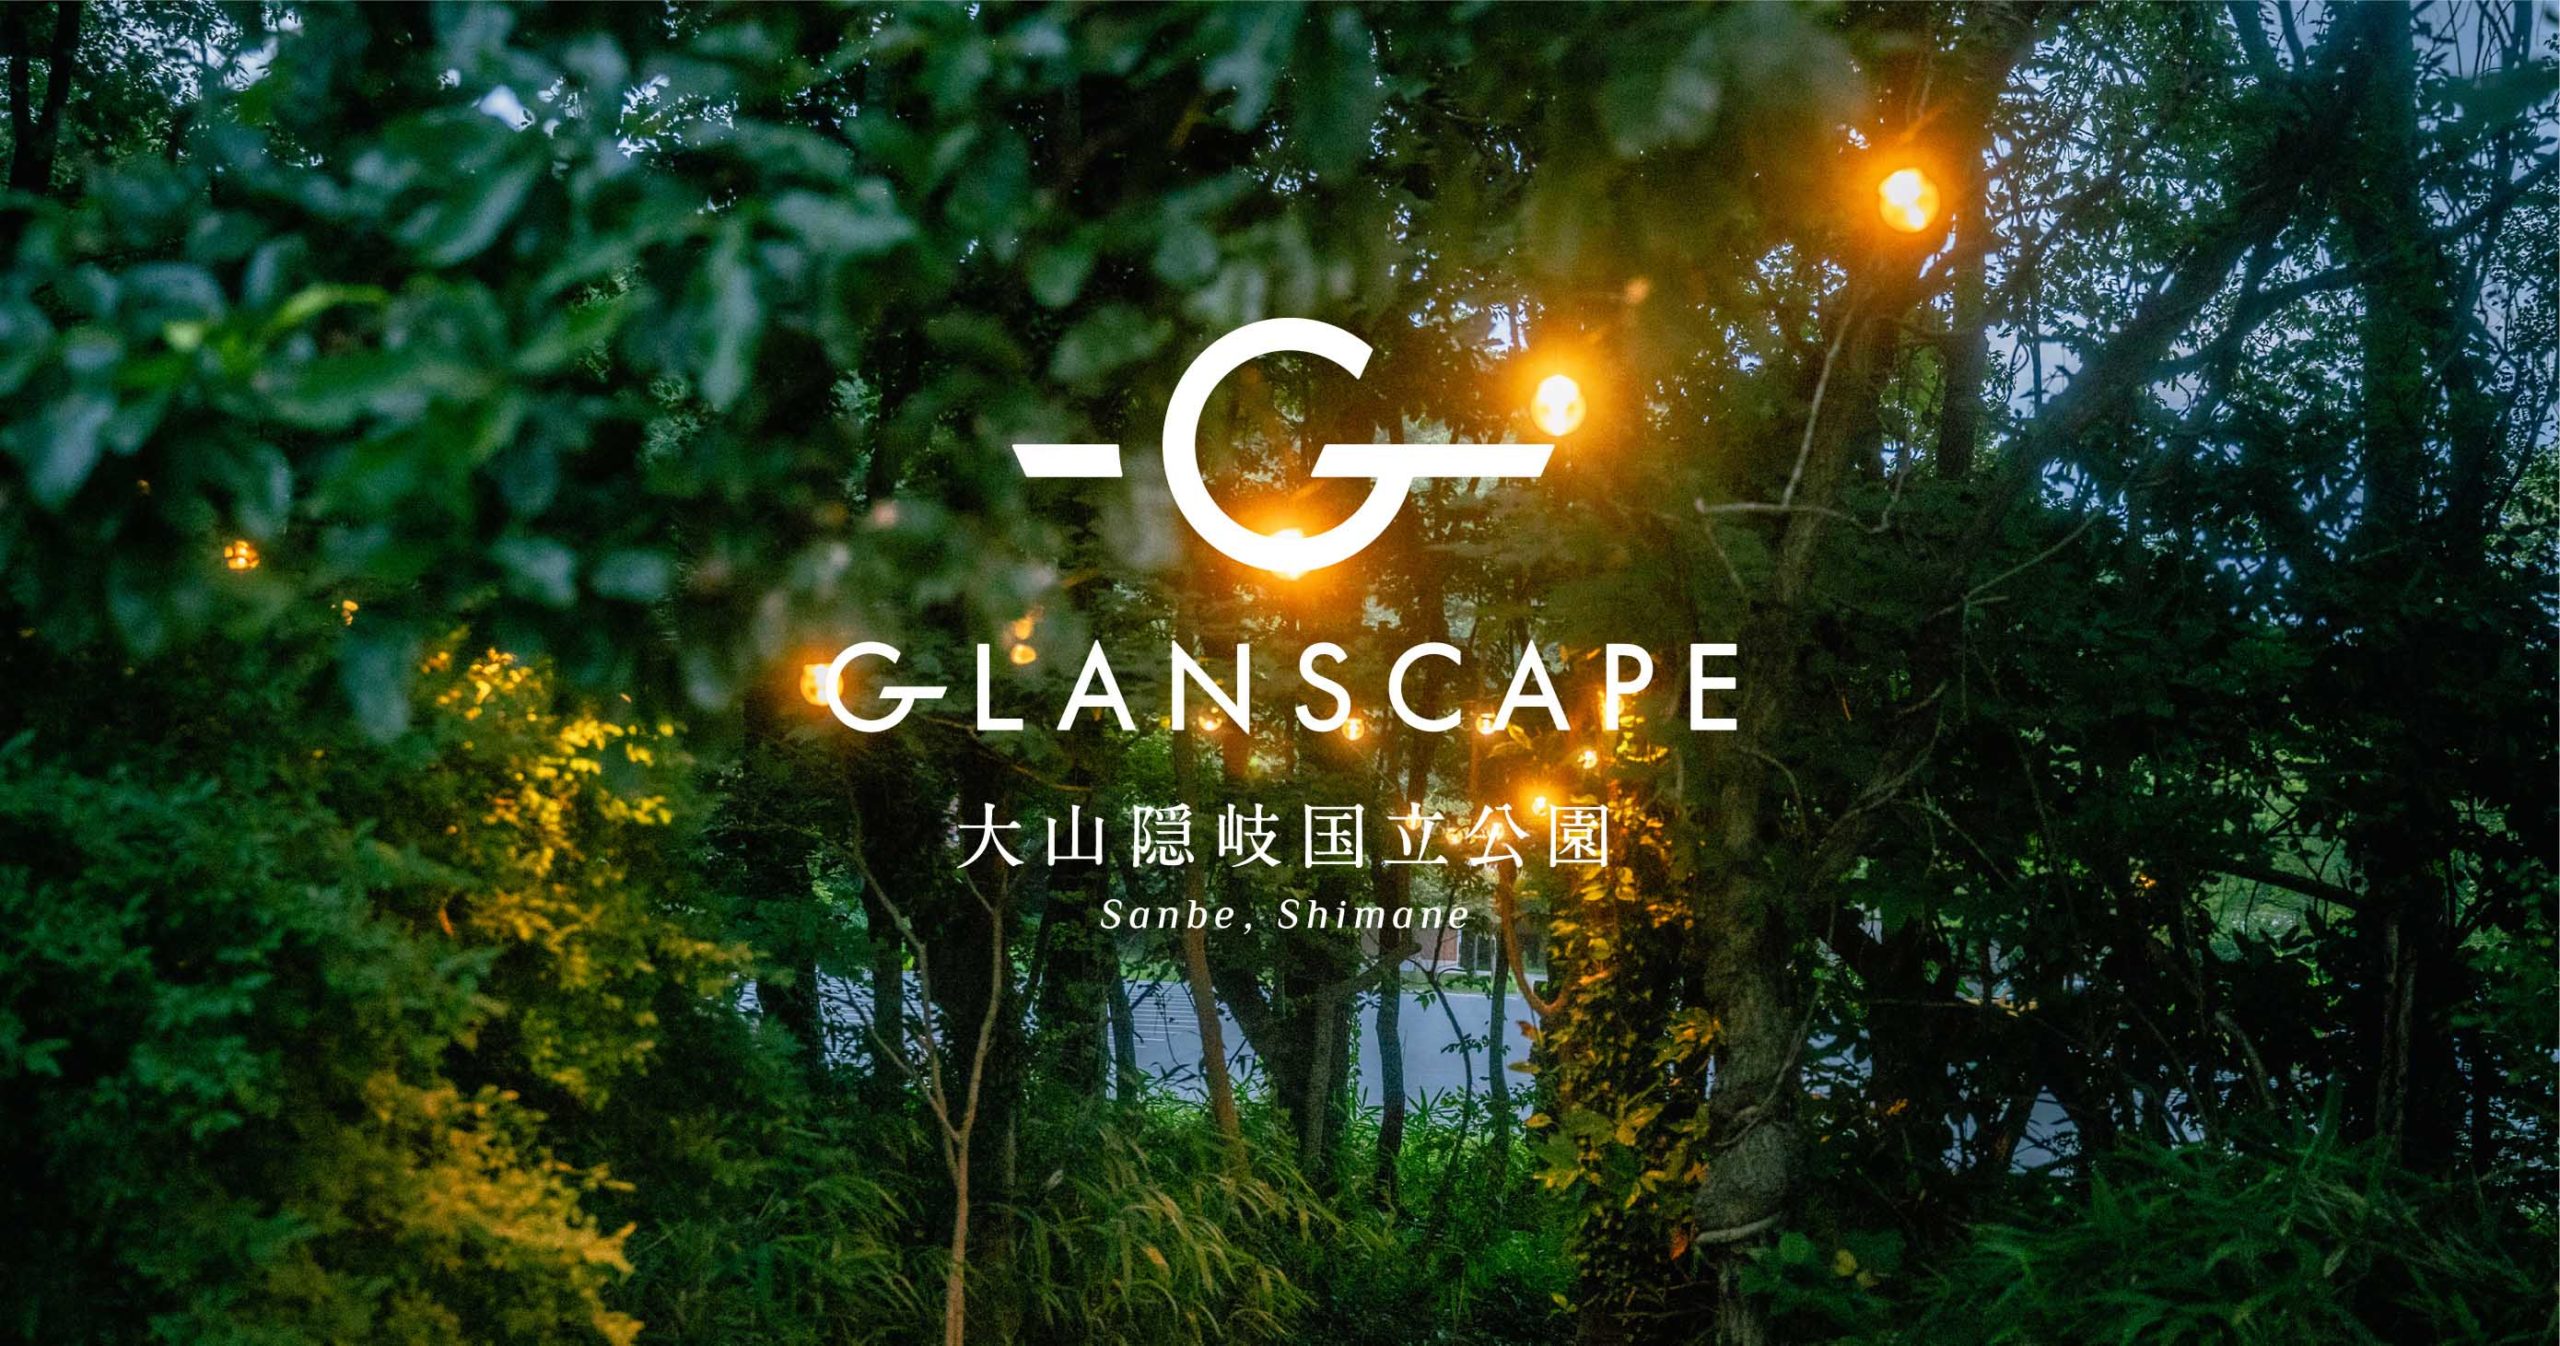 GLANSCAPE 大山隠岐国立公園Sanbe, Shimane｜横尾美杉 アートディレクター 